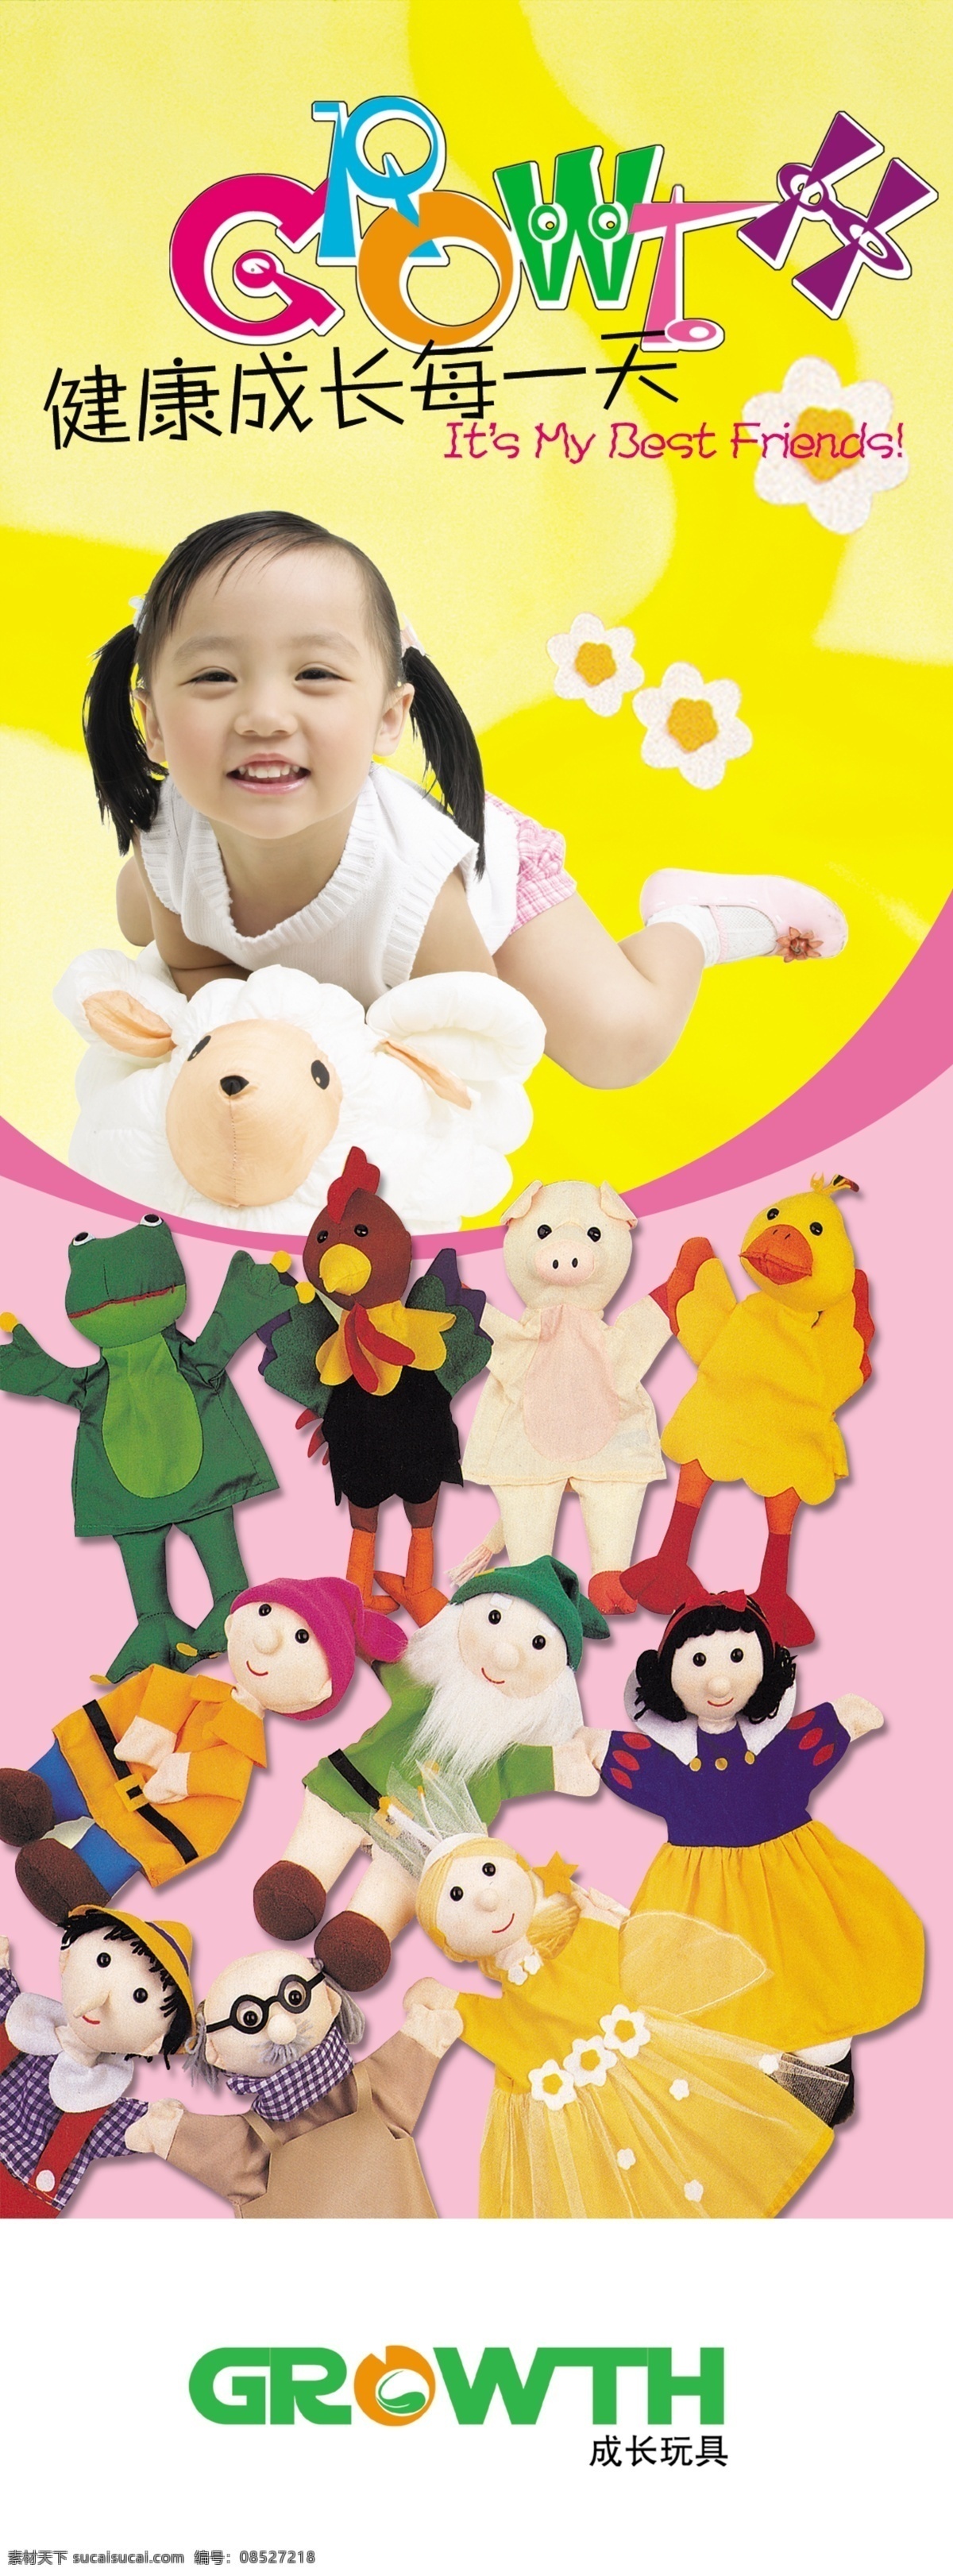 分层 粉色素材 黄色背景 玩具 玩具世界 小女孩 源文件 世界 模板下载